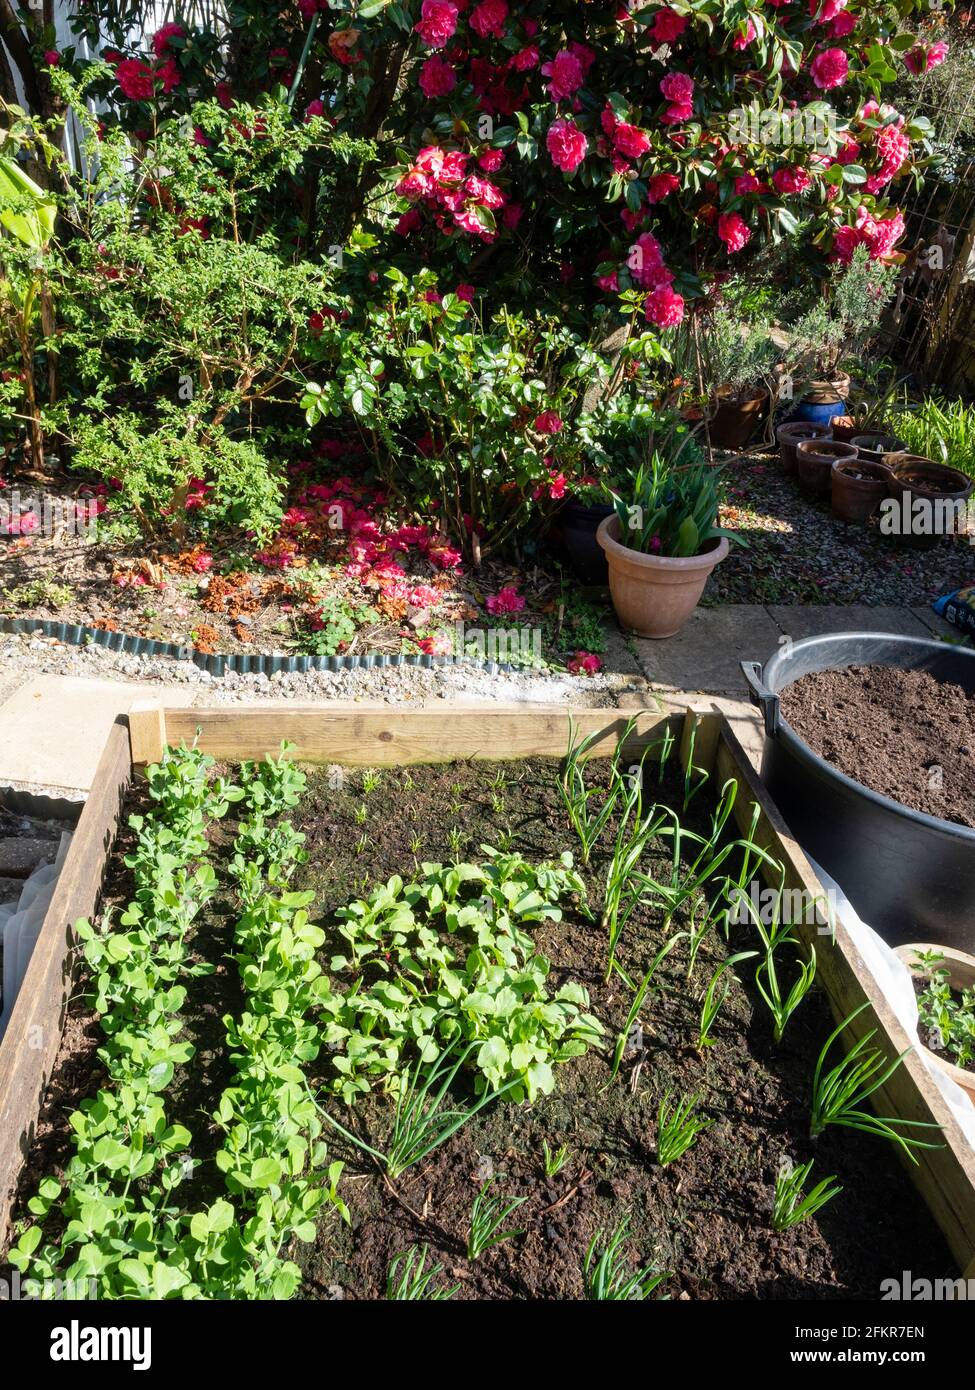 Lit de légumes élevé au début du printemps planté de petits pois, de radis, d'échalotes, d'ail et de carottes dans un cadre de jardin Banque D'Images